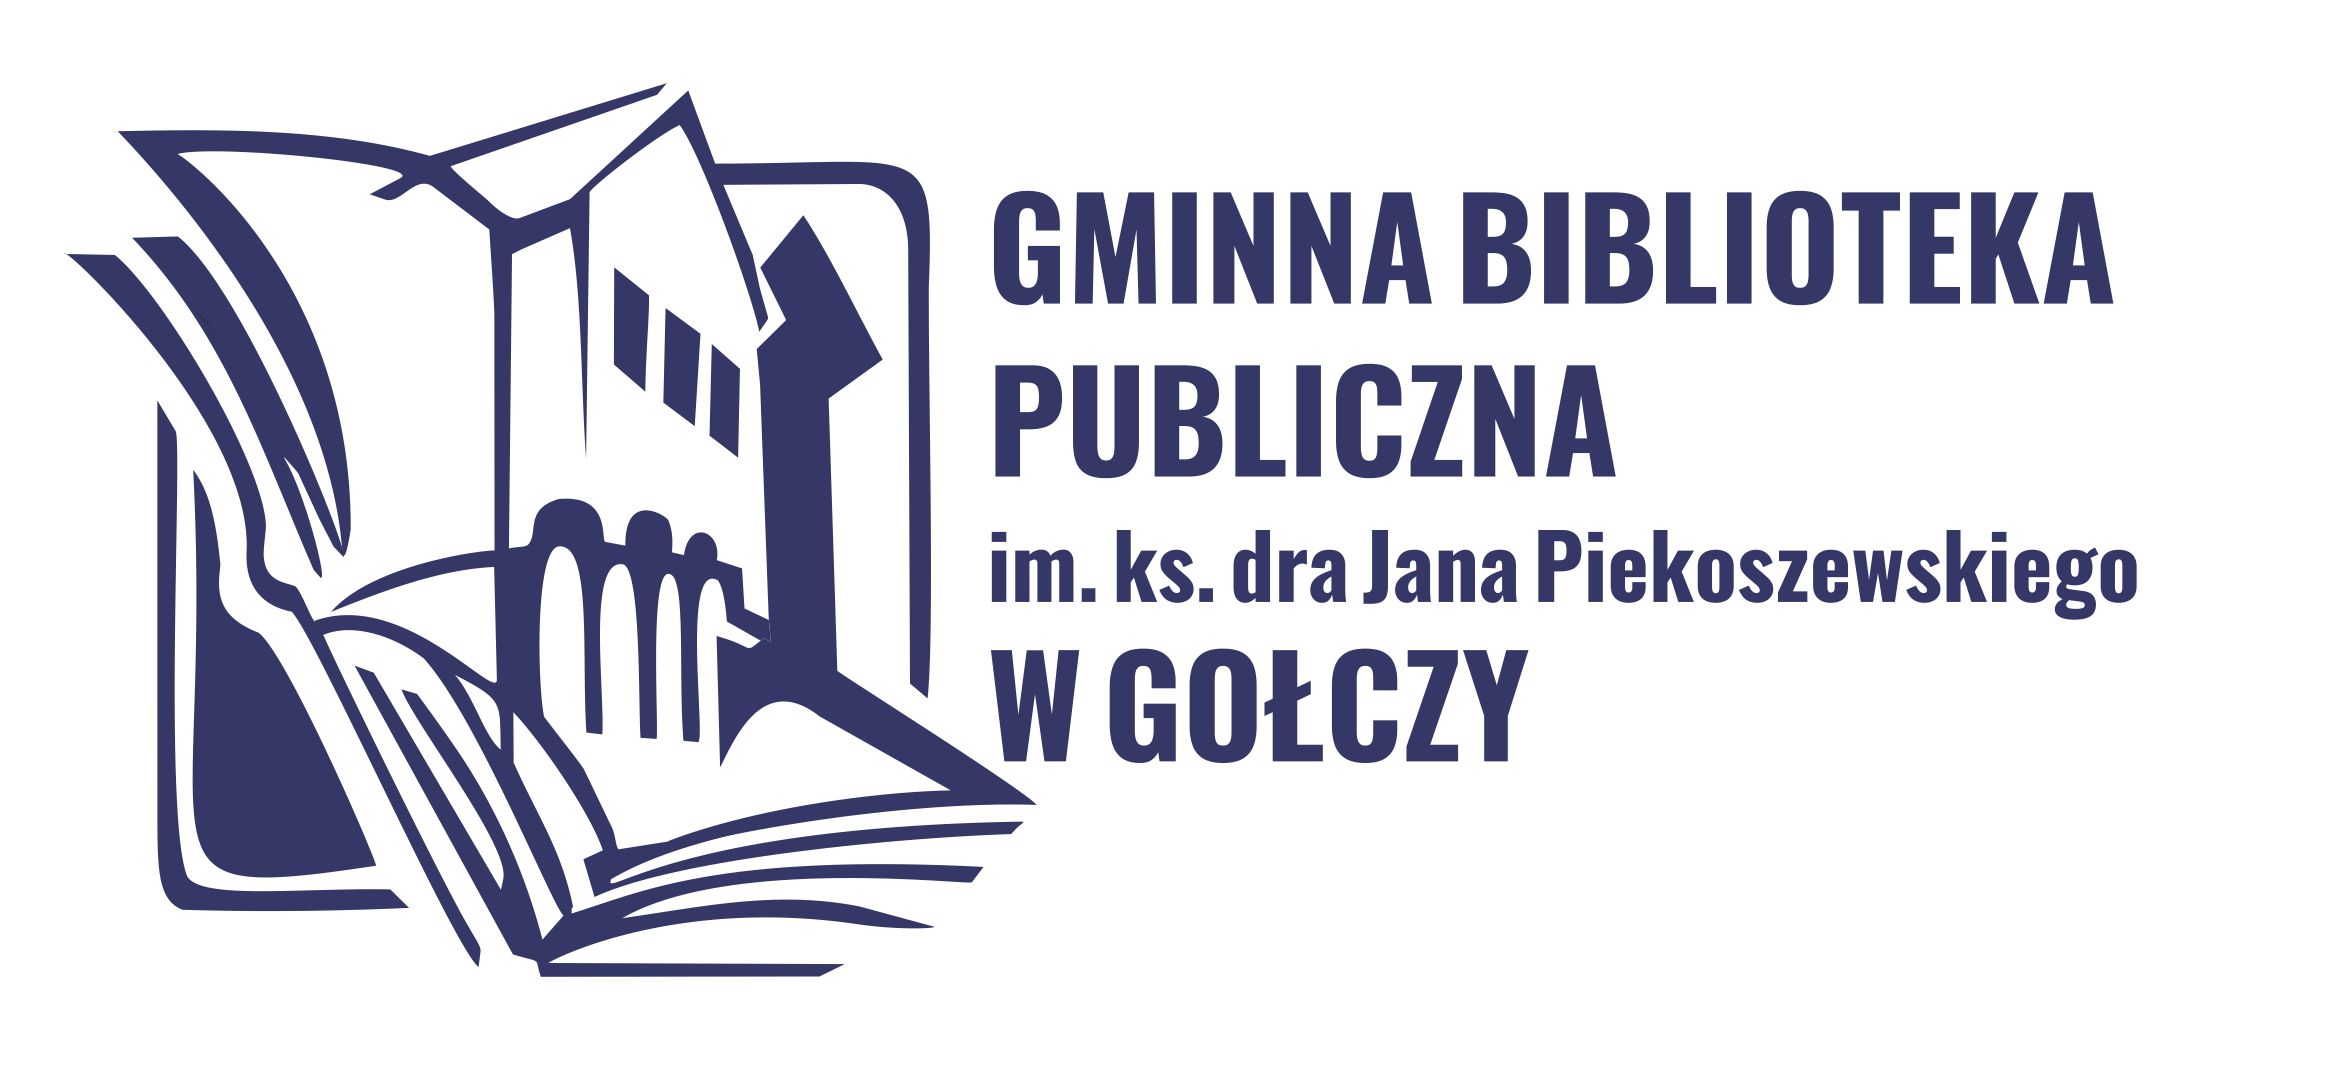 Gminna Biblioteka Publiczna w Gołczy